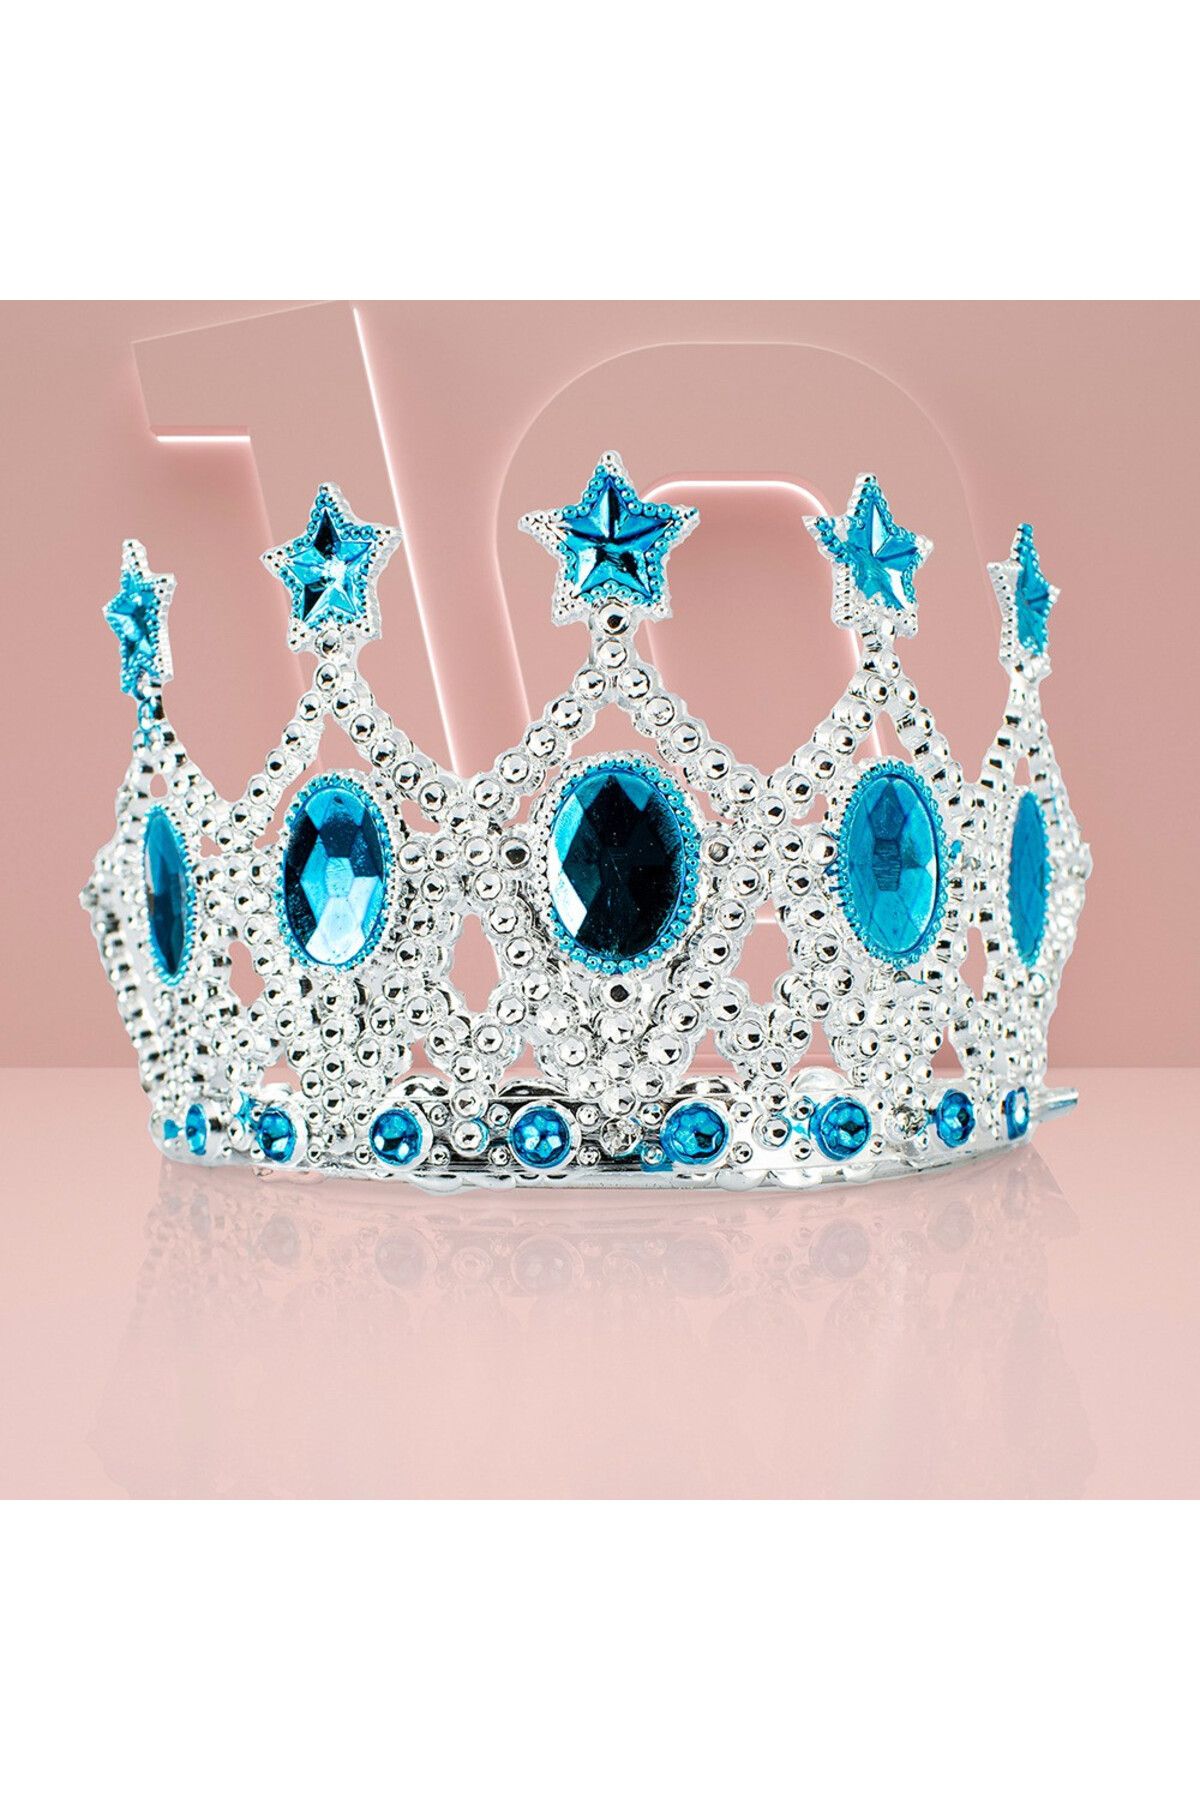 Genel Markalar Çocuk Kraliçe Tacı - Mavi Yıldız Işlemeli Prenses Tacı 15x7 Cm